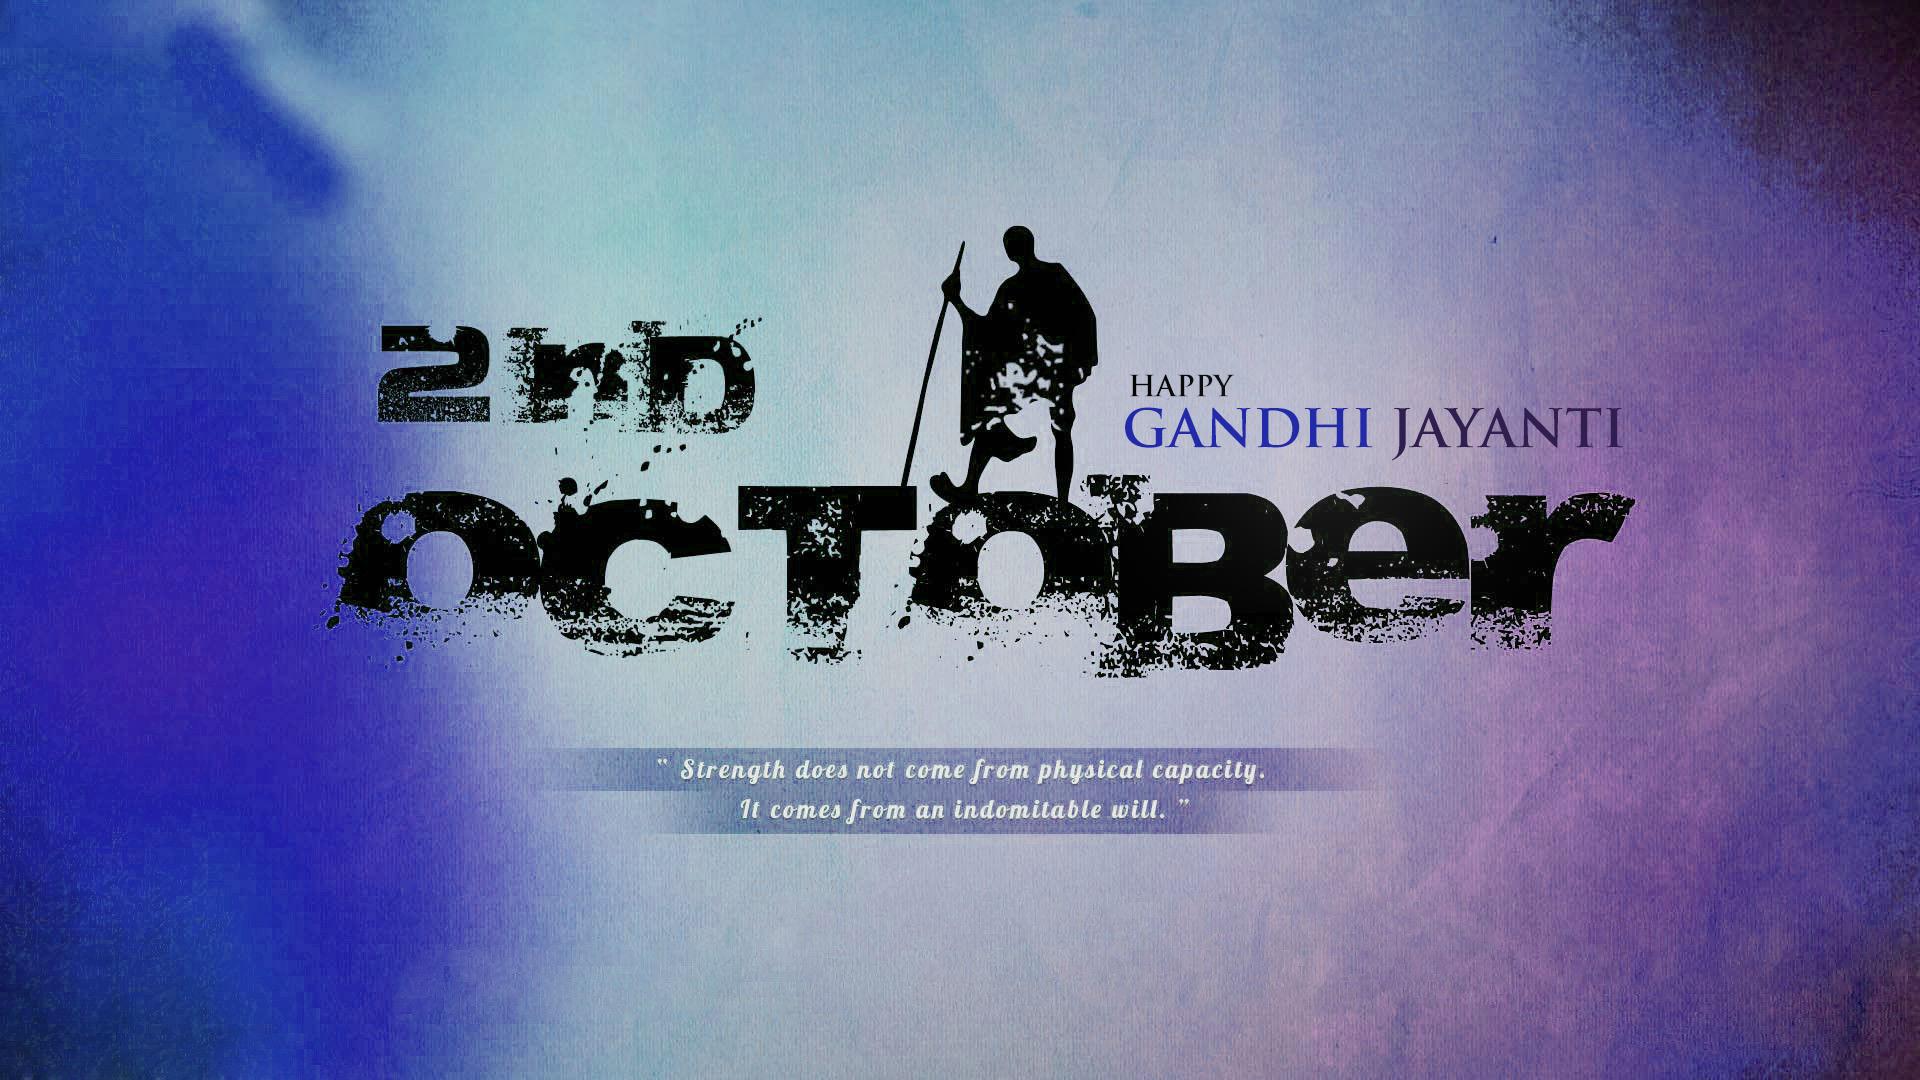 Happy Gandhi Jayanti 2018: Wishes, Image, Speeches, Status